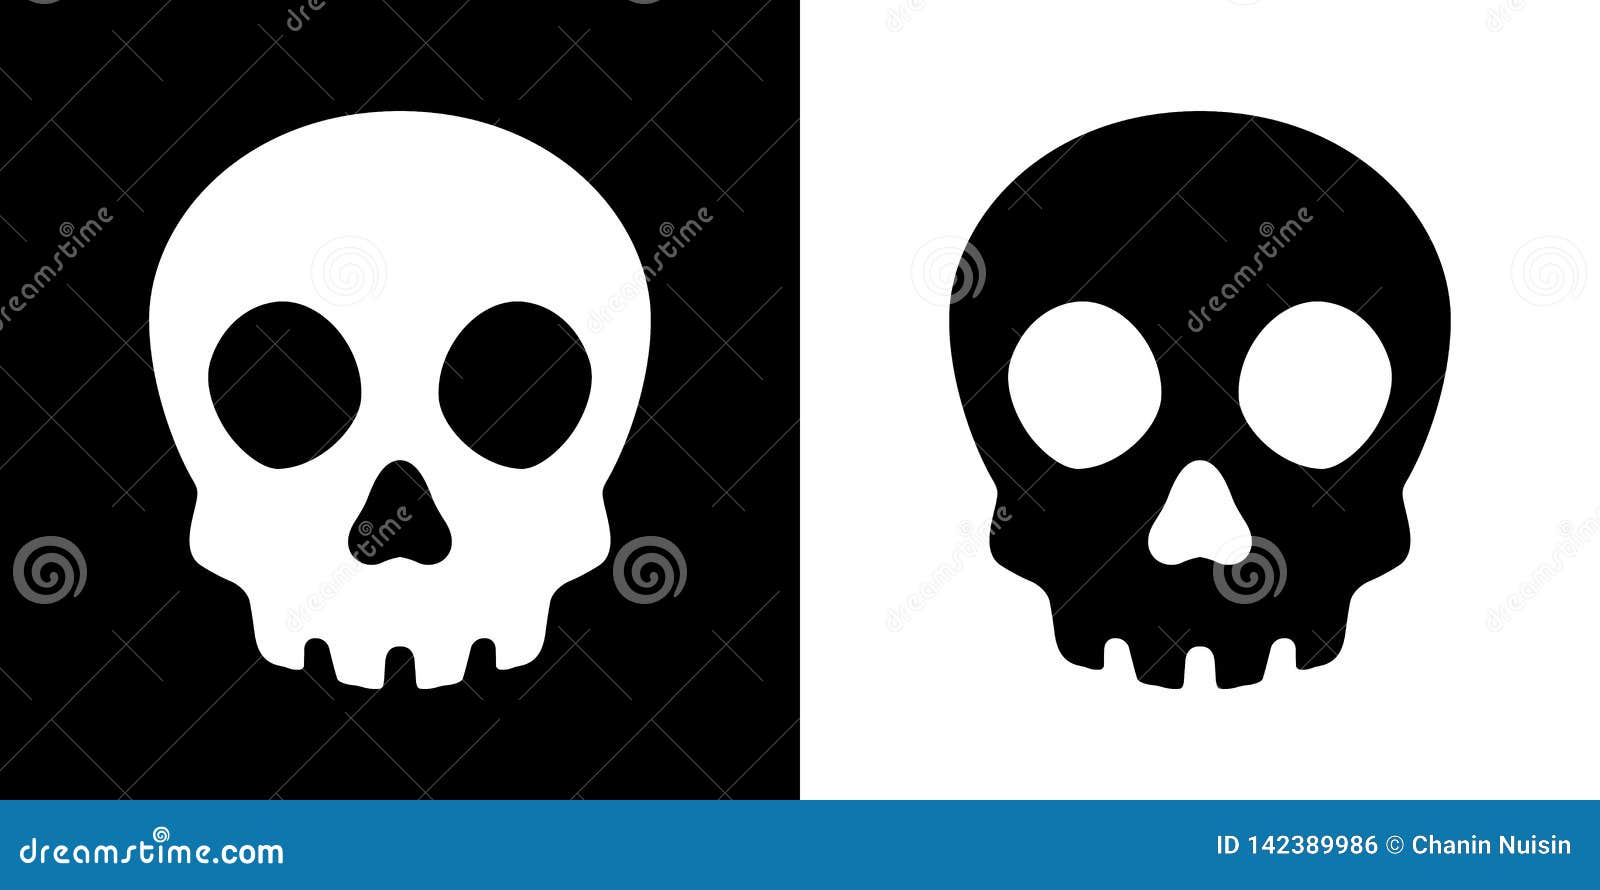 Vetor de ilustração do logotipo do crânio de piratas